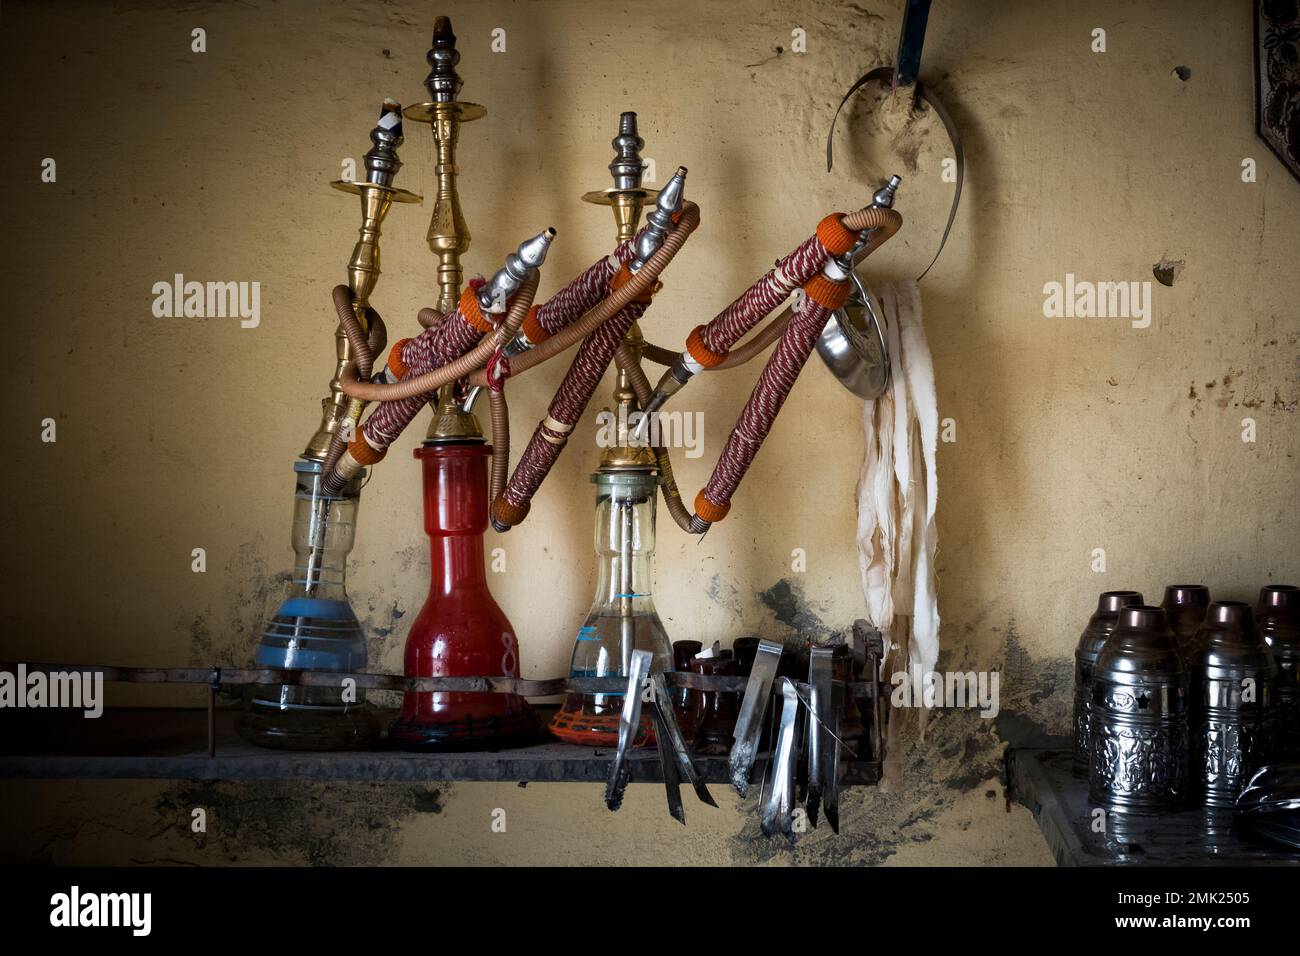 Moody imágenes en un bar Shisha en Egipto Foto de stock